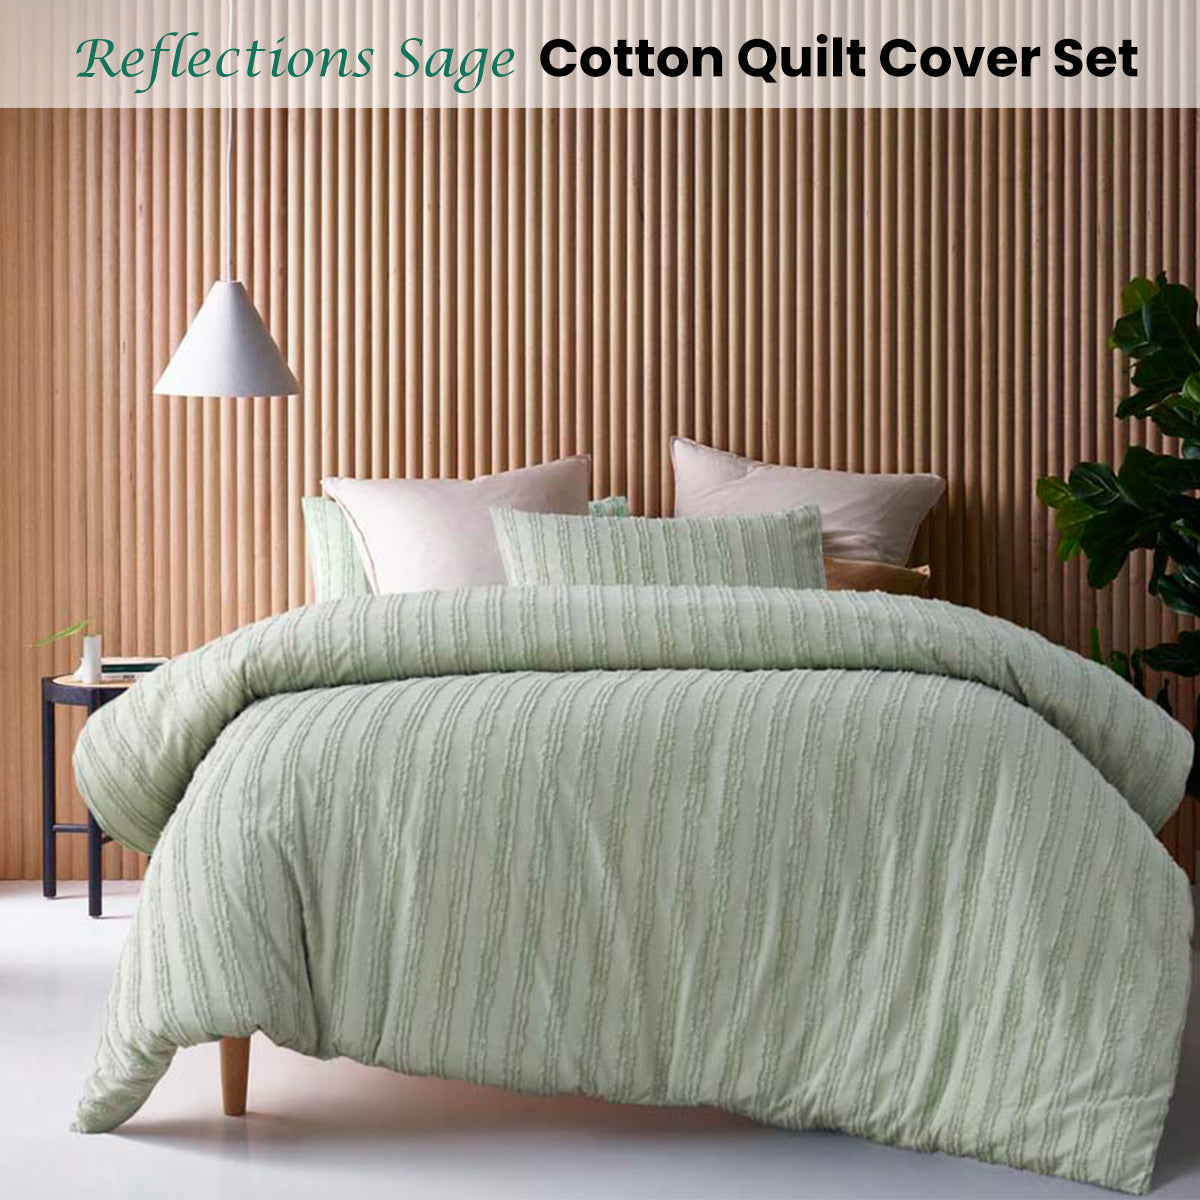 Queen Vintage Design Cotton Quilt Cover Set - Sage